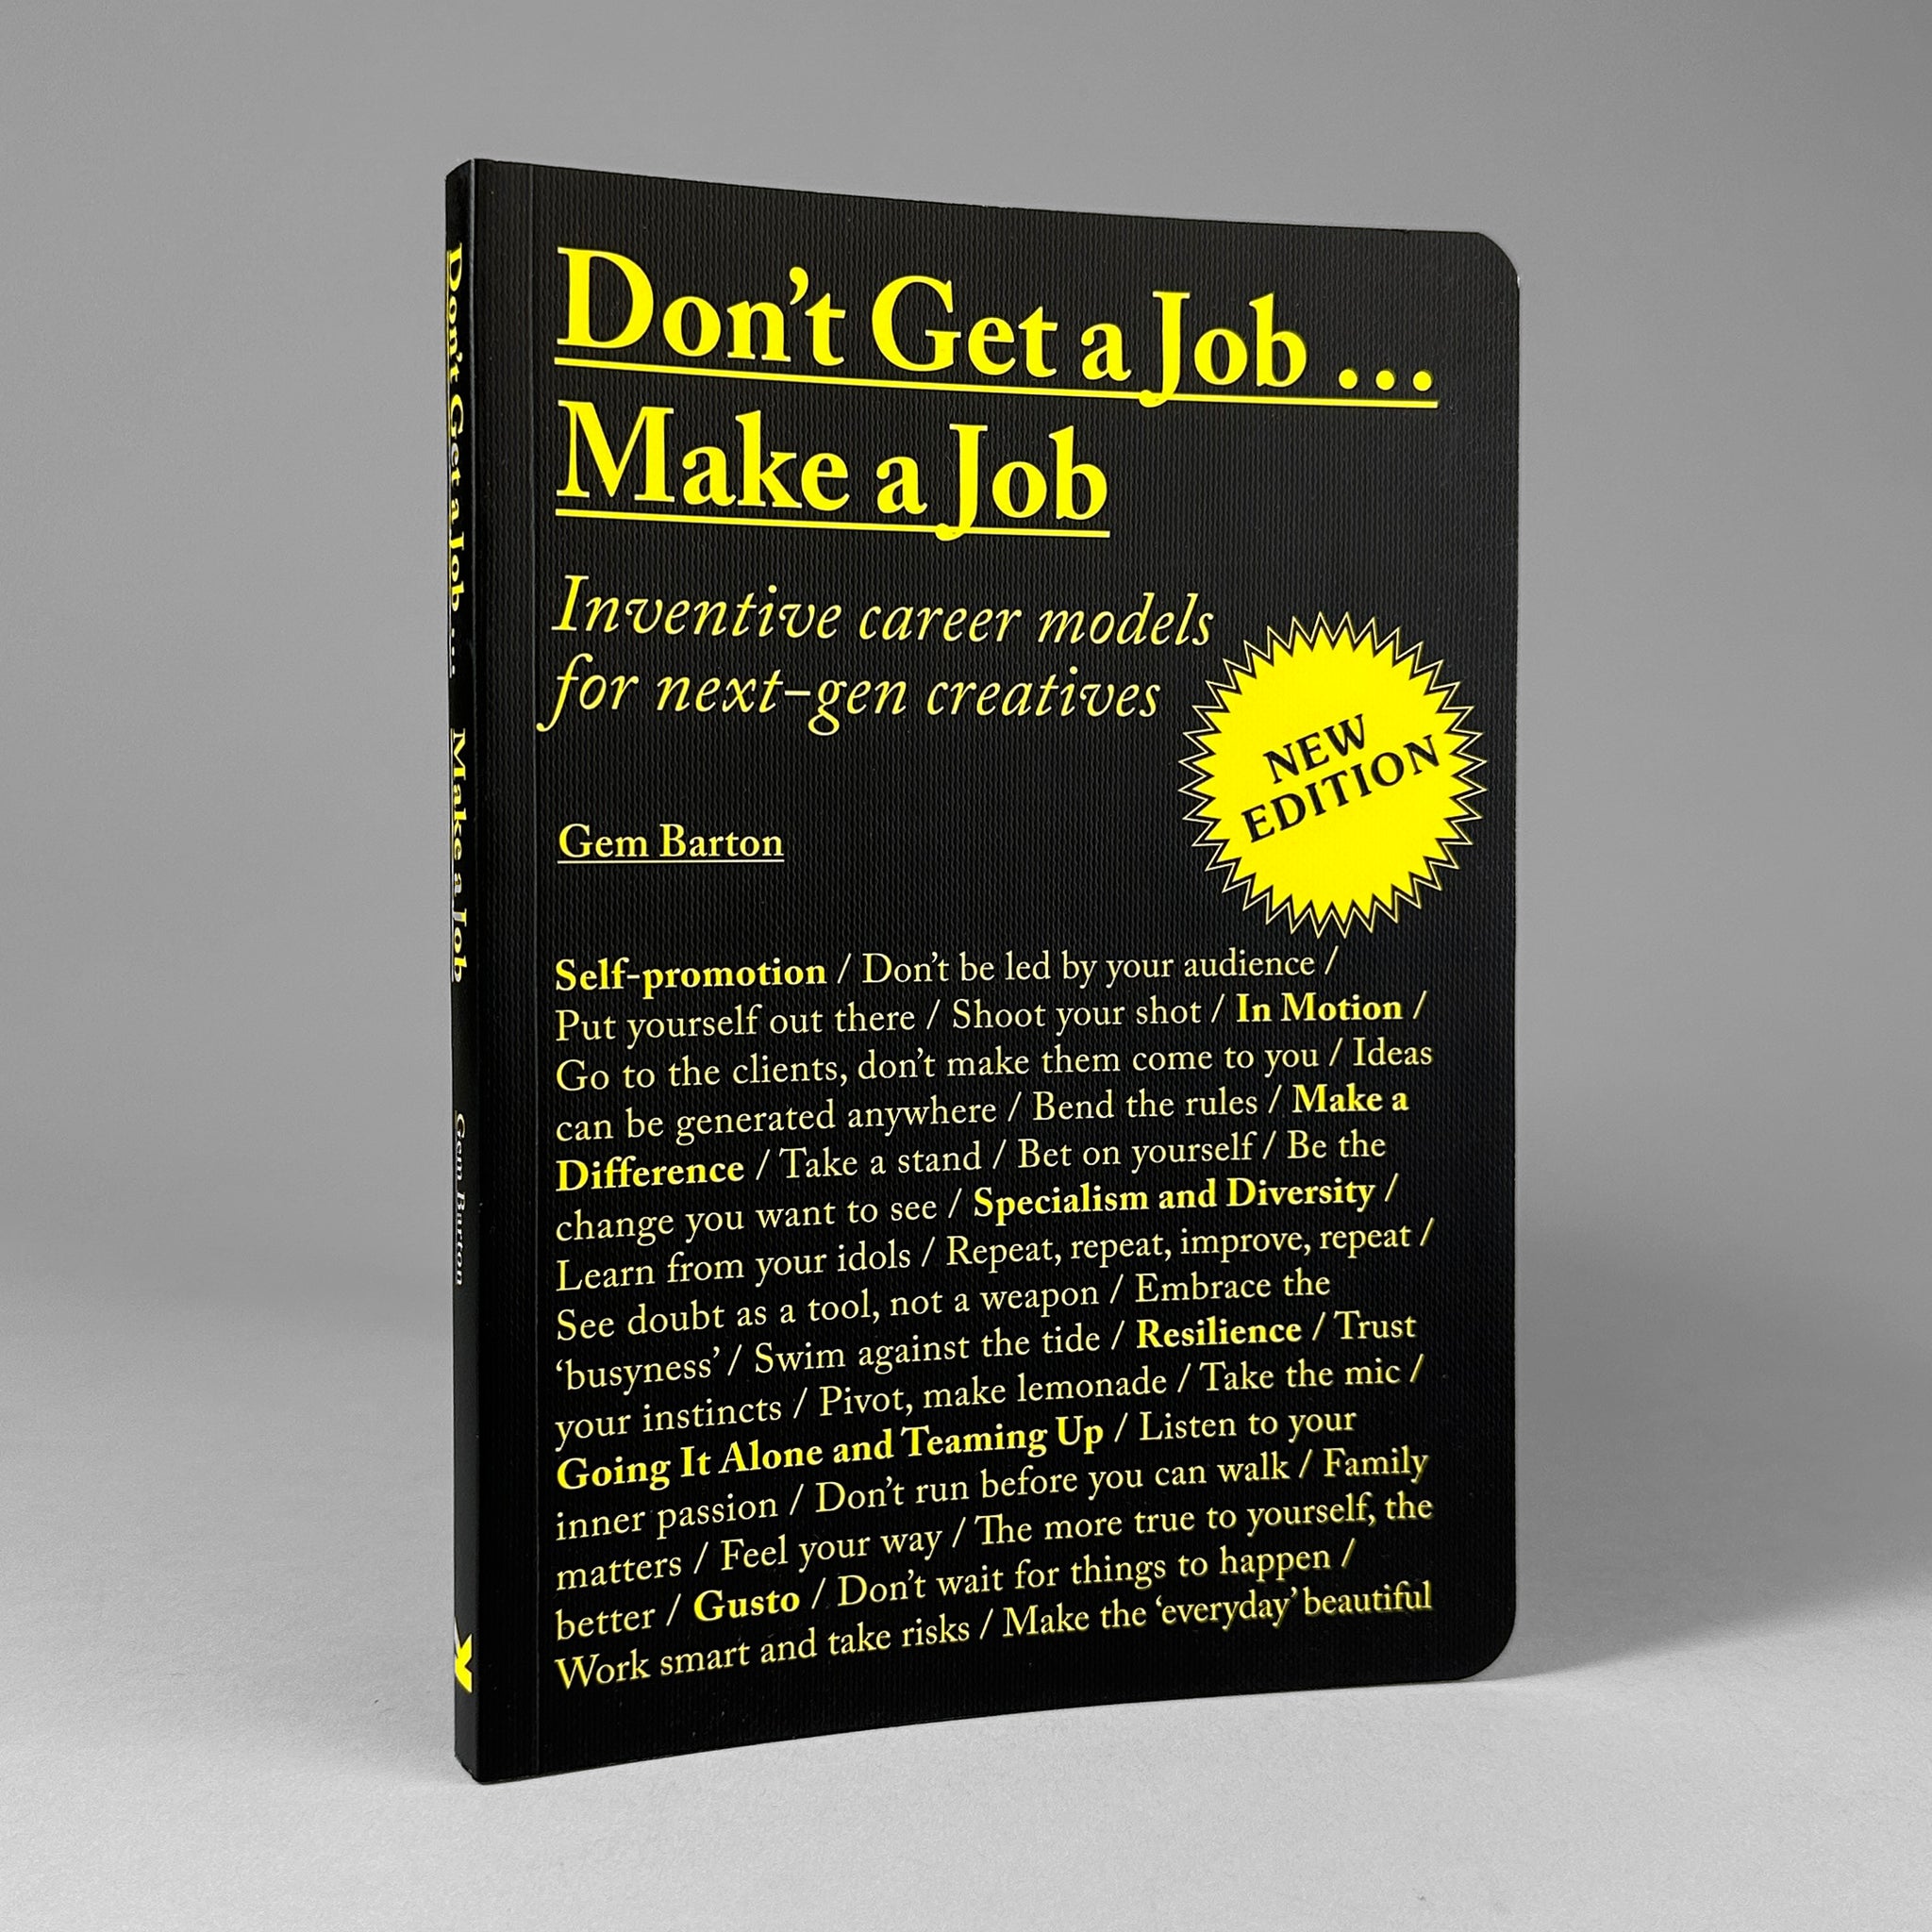 Don't Get a Job... Make a Job: Inventive Career Models for Next-Gen Creatives